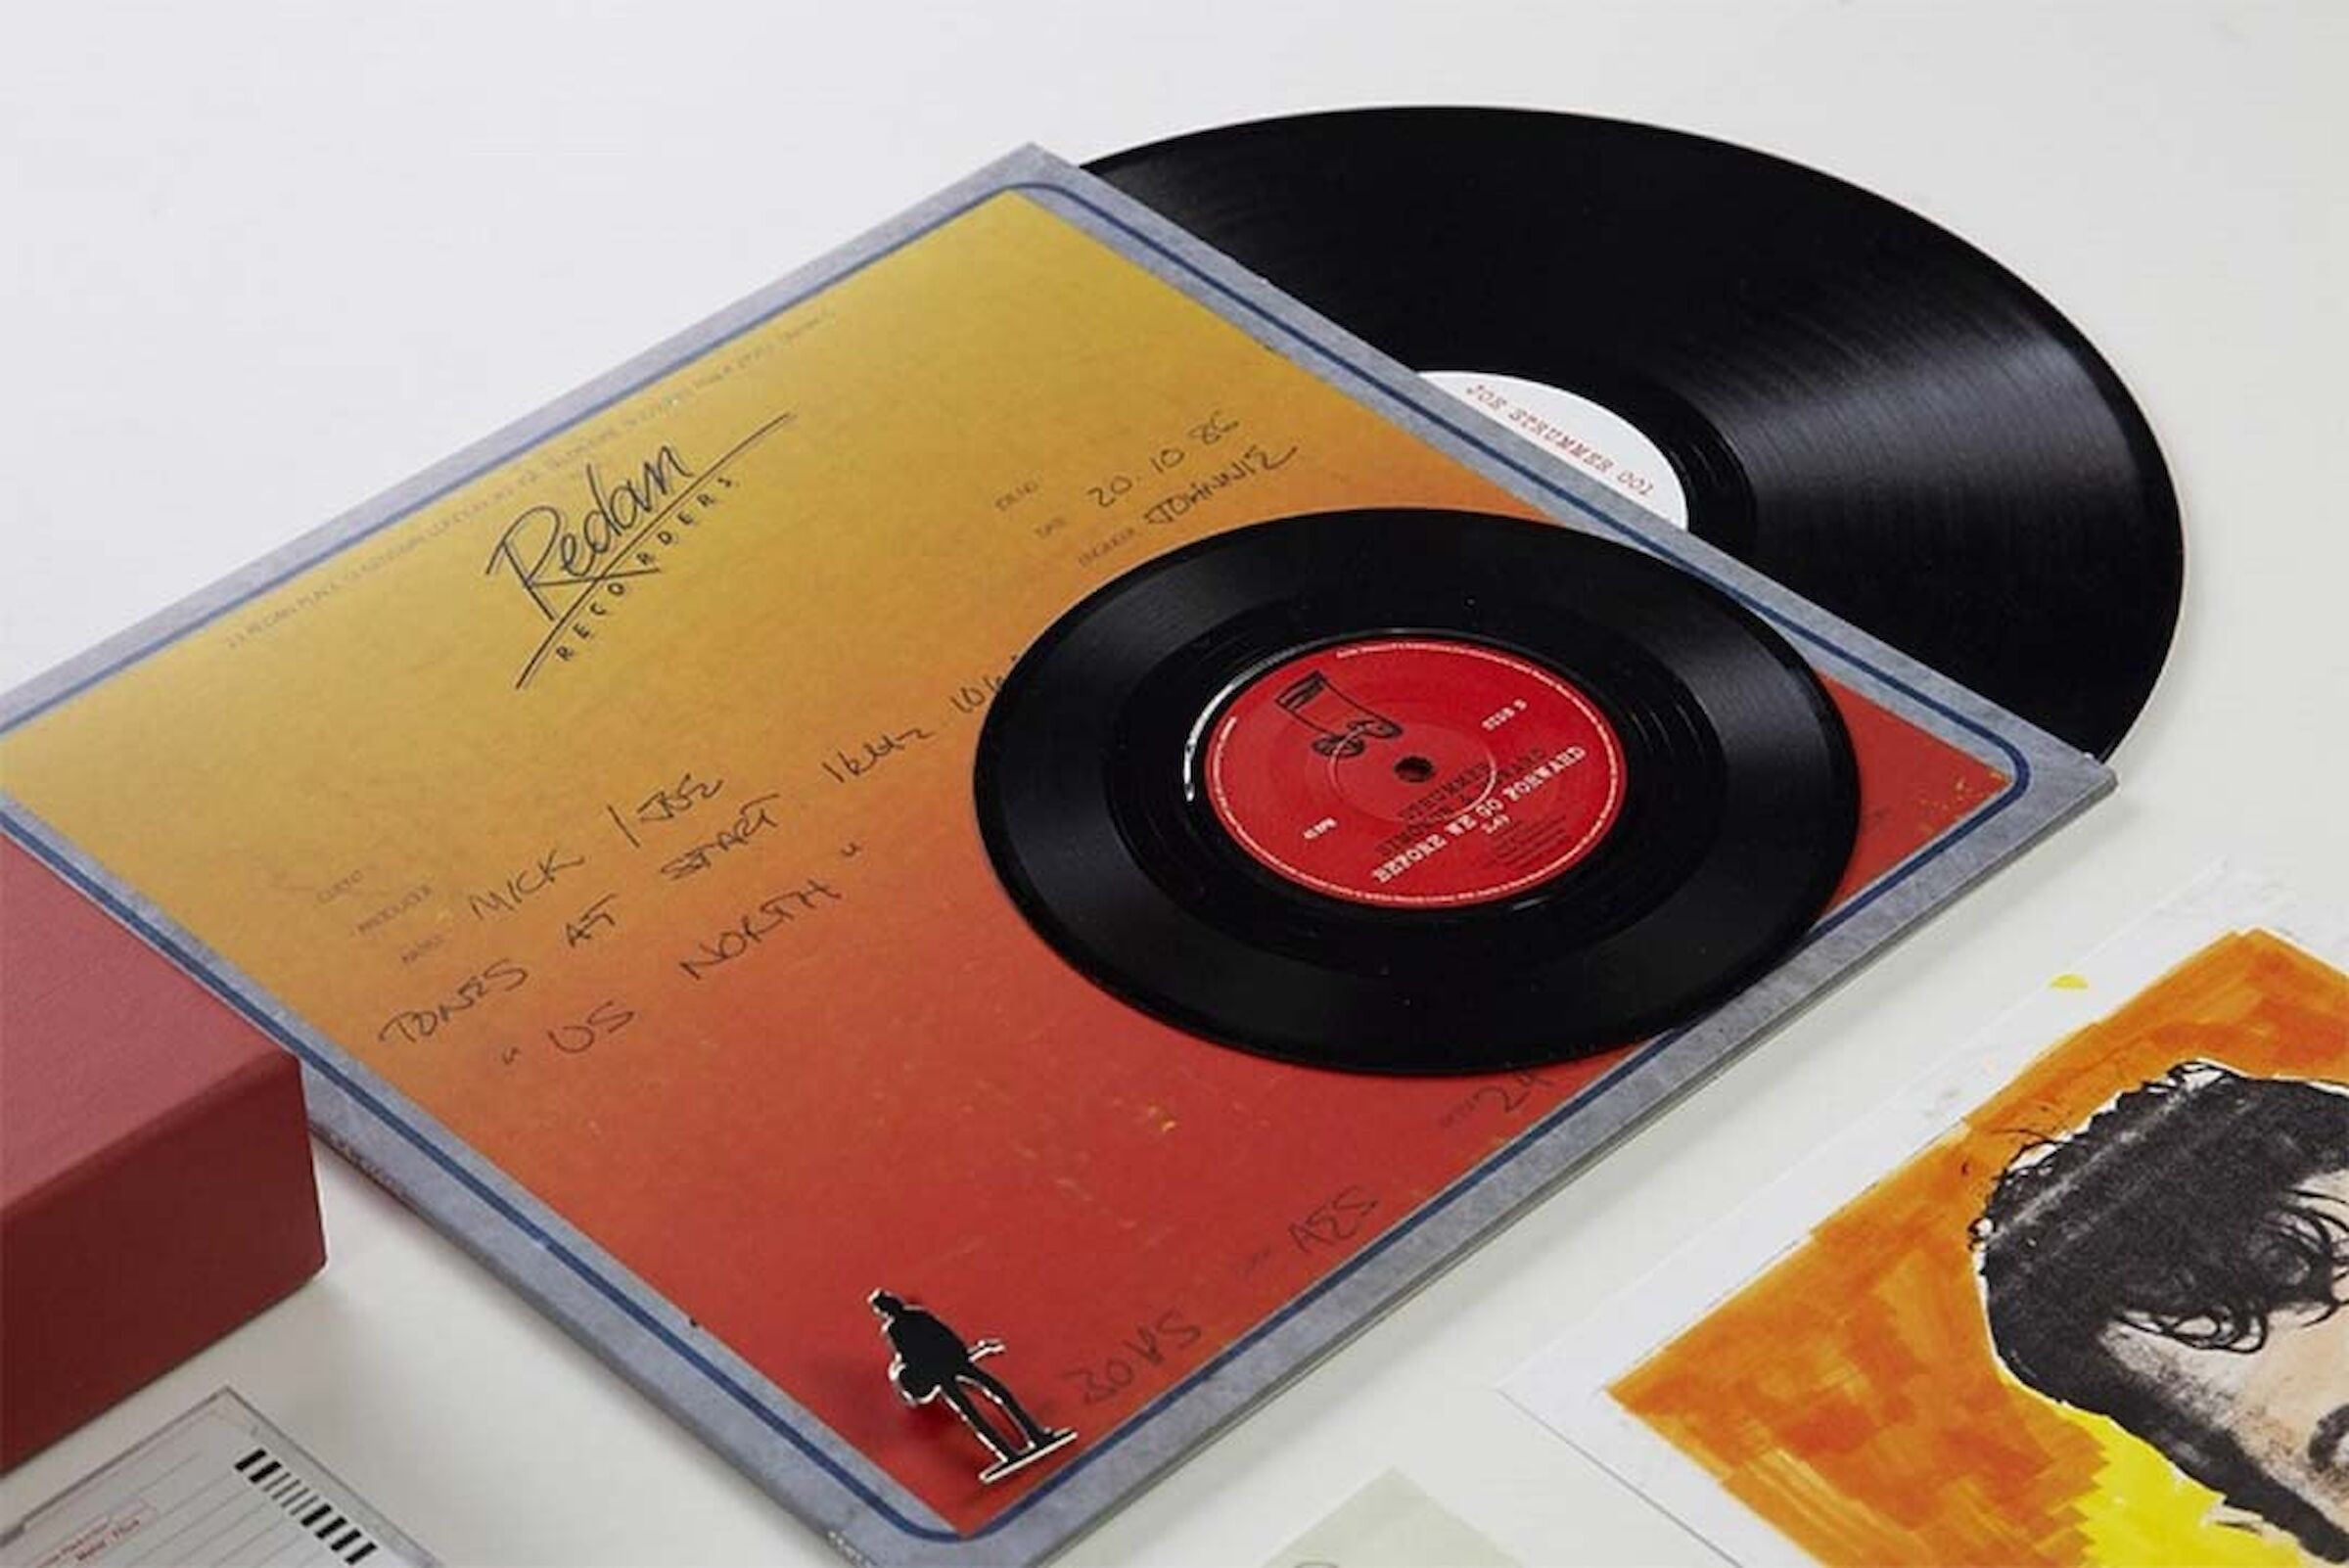 The Joe Strummer boxset showing sleeves and 7" vinyl